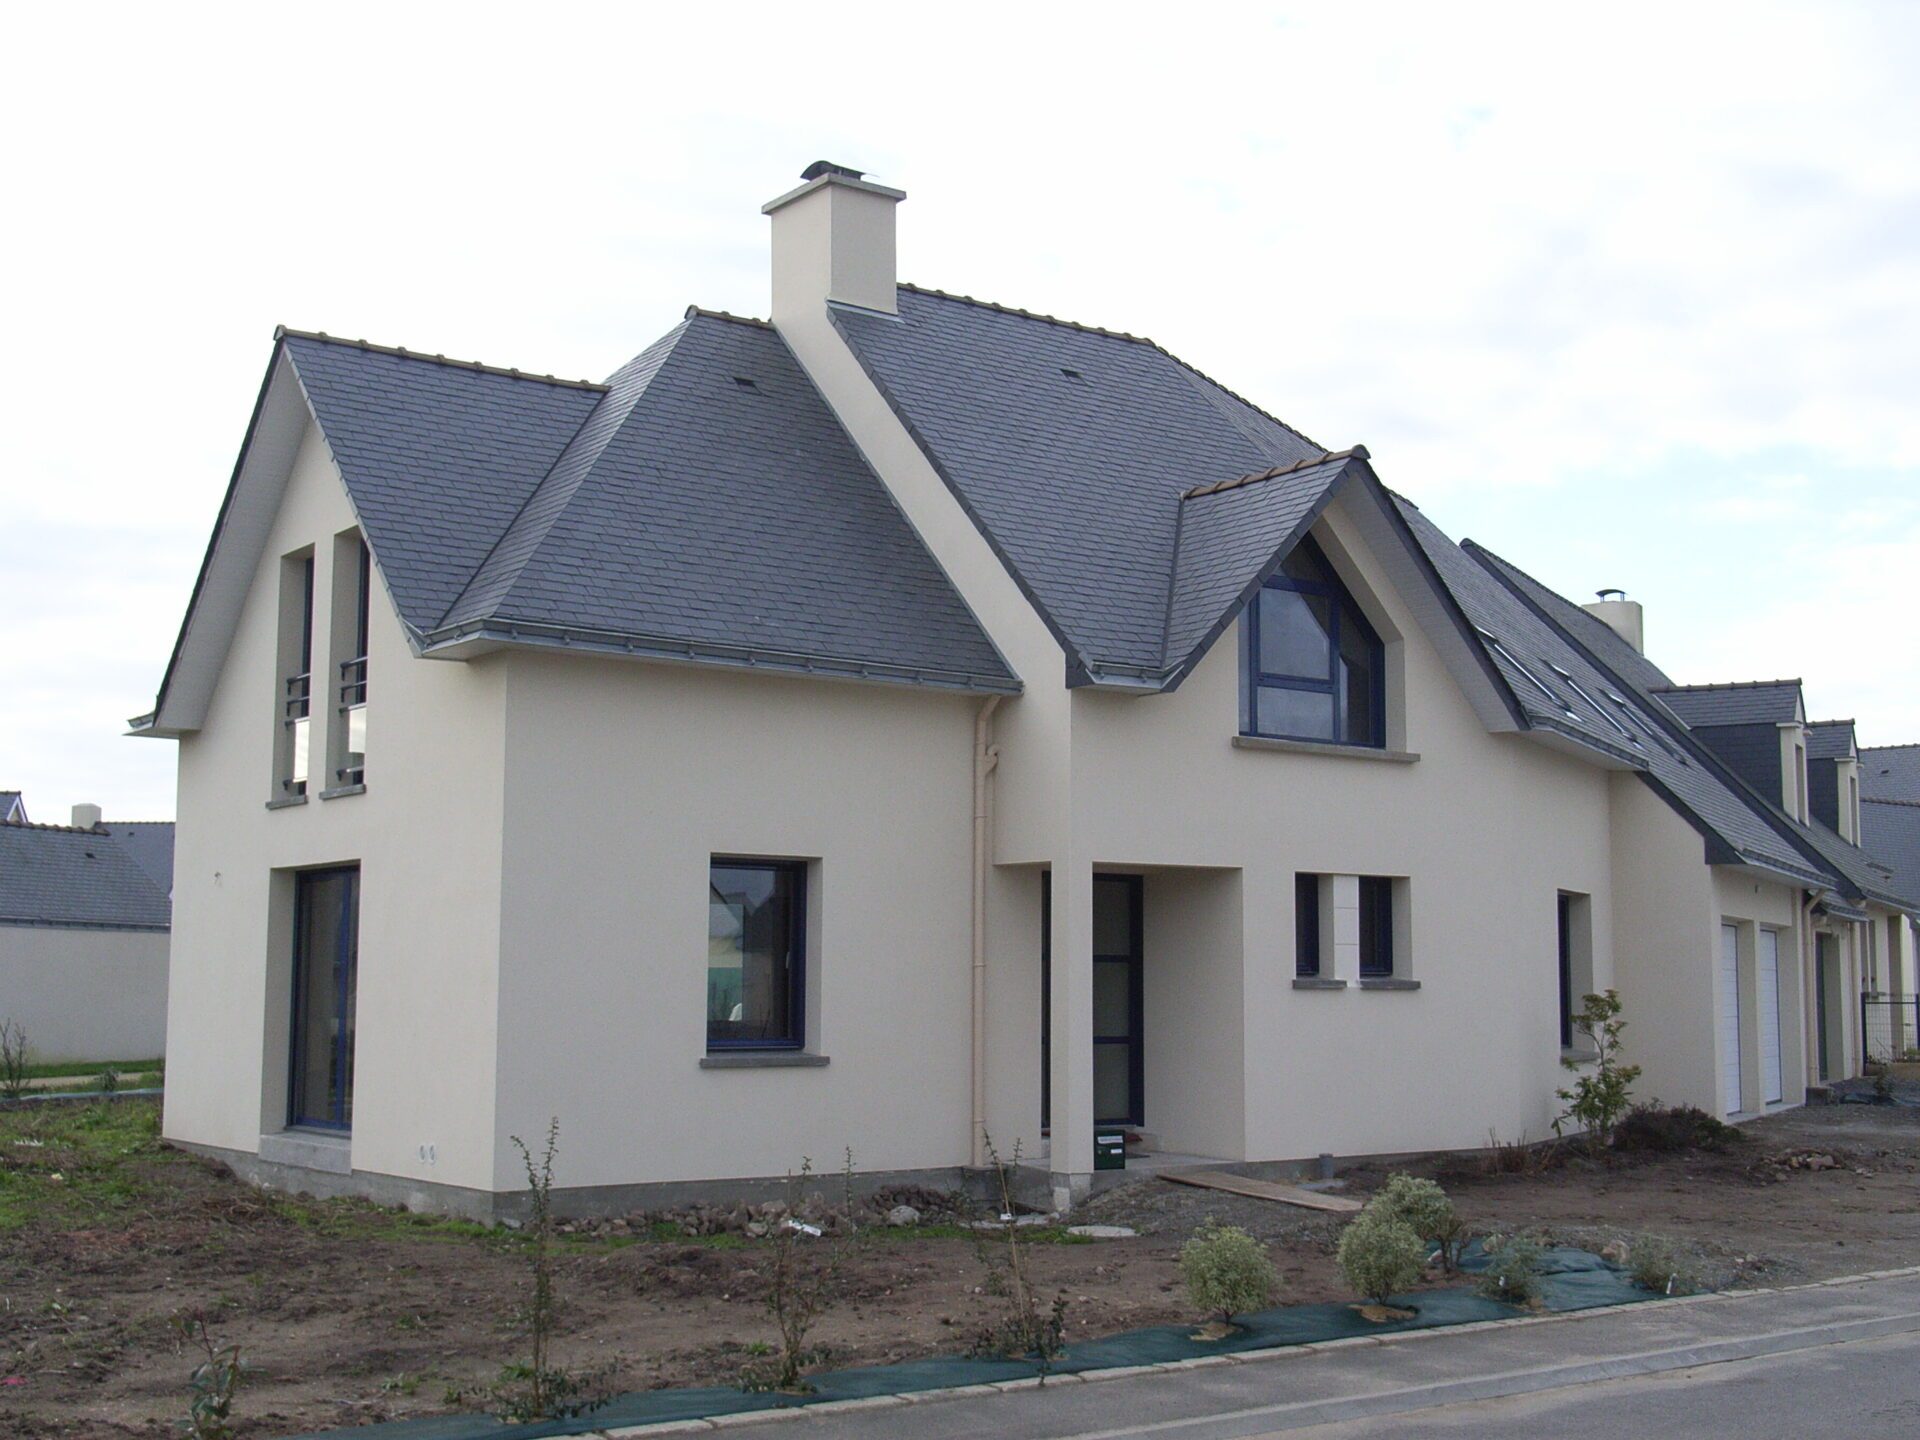 Maison avec toiture en ardoise et grandes baies vitrées